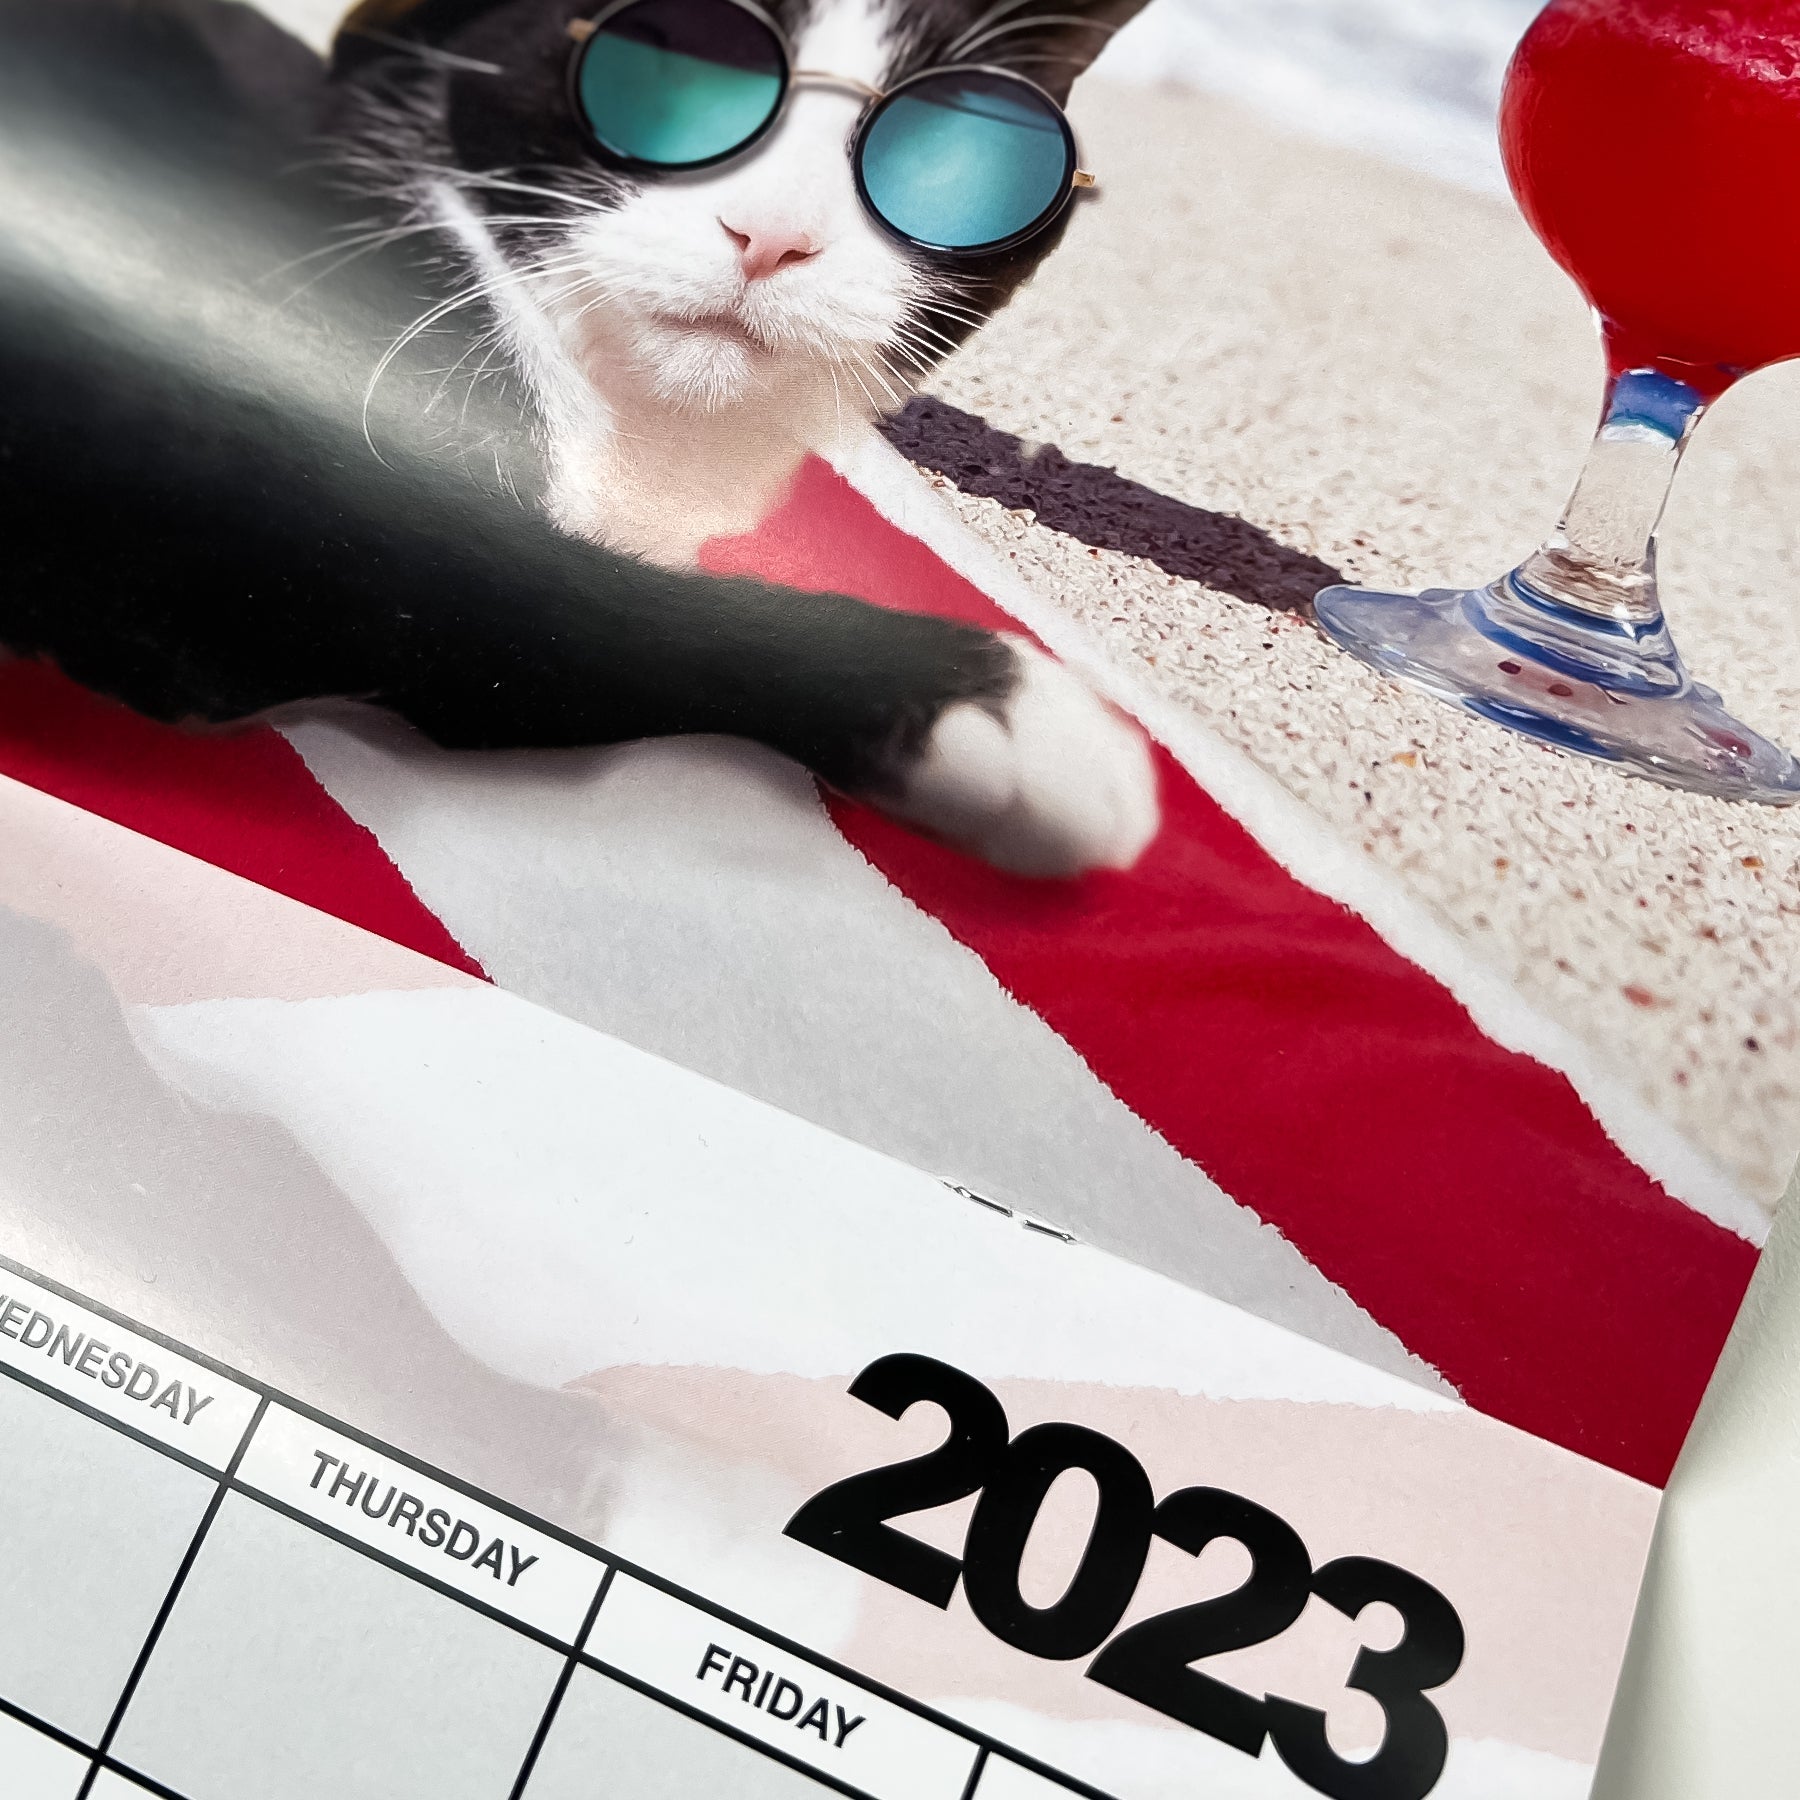 meowingtons 2023 calendar